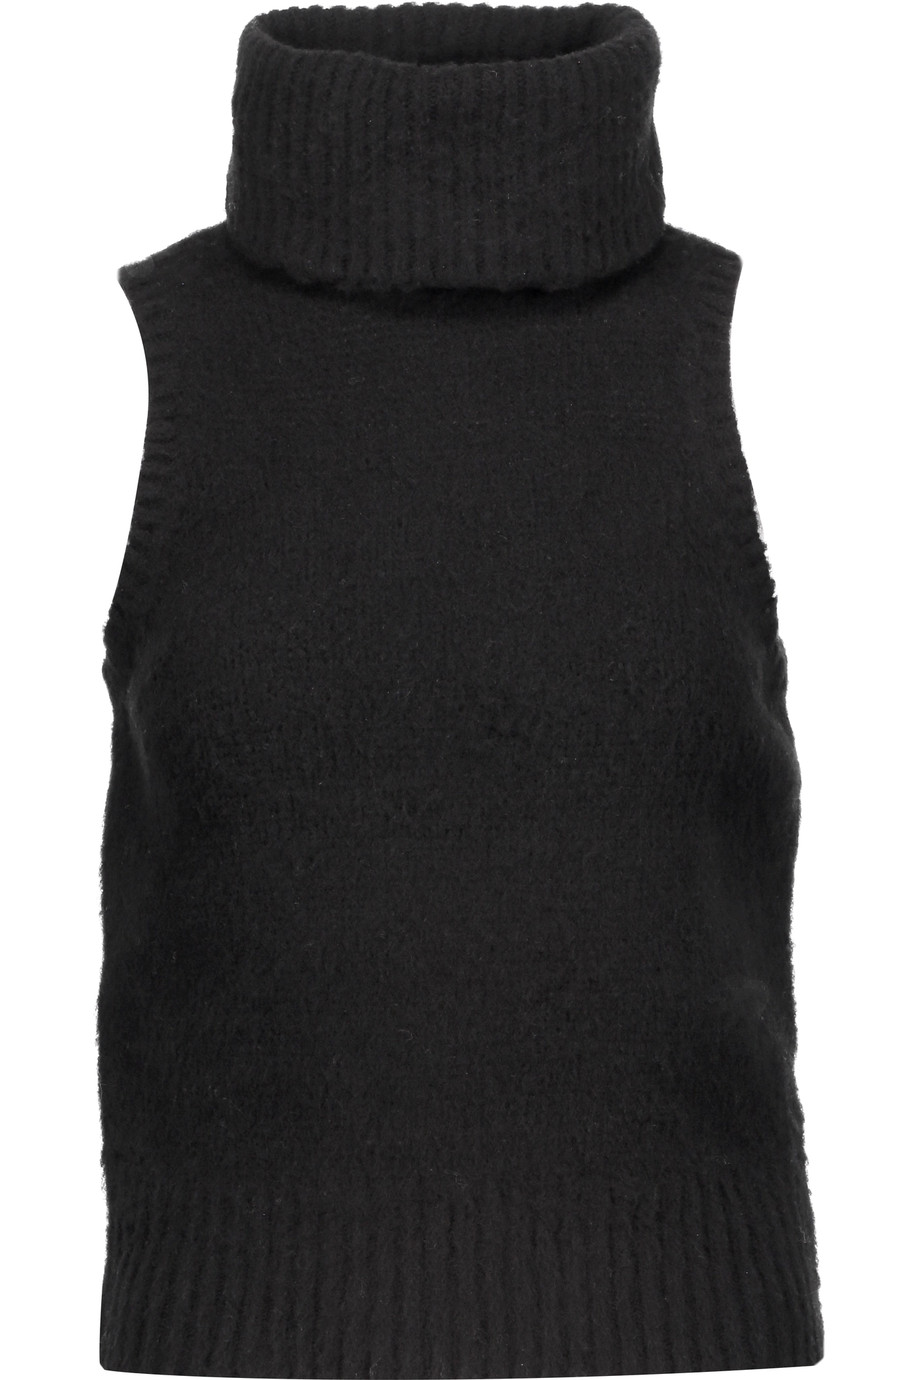 Rachel Zoe Elodie Wool Turtleneck Sweater | ModeSens